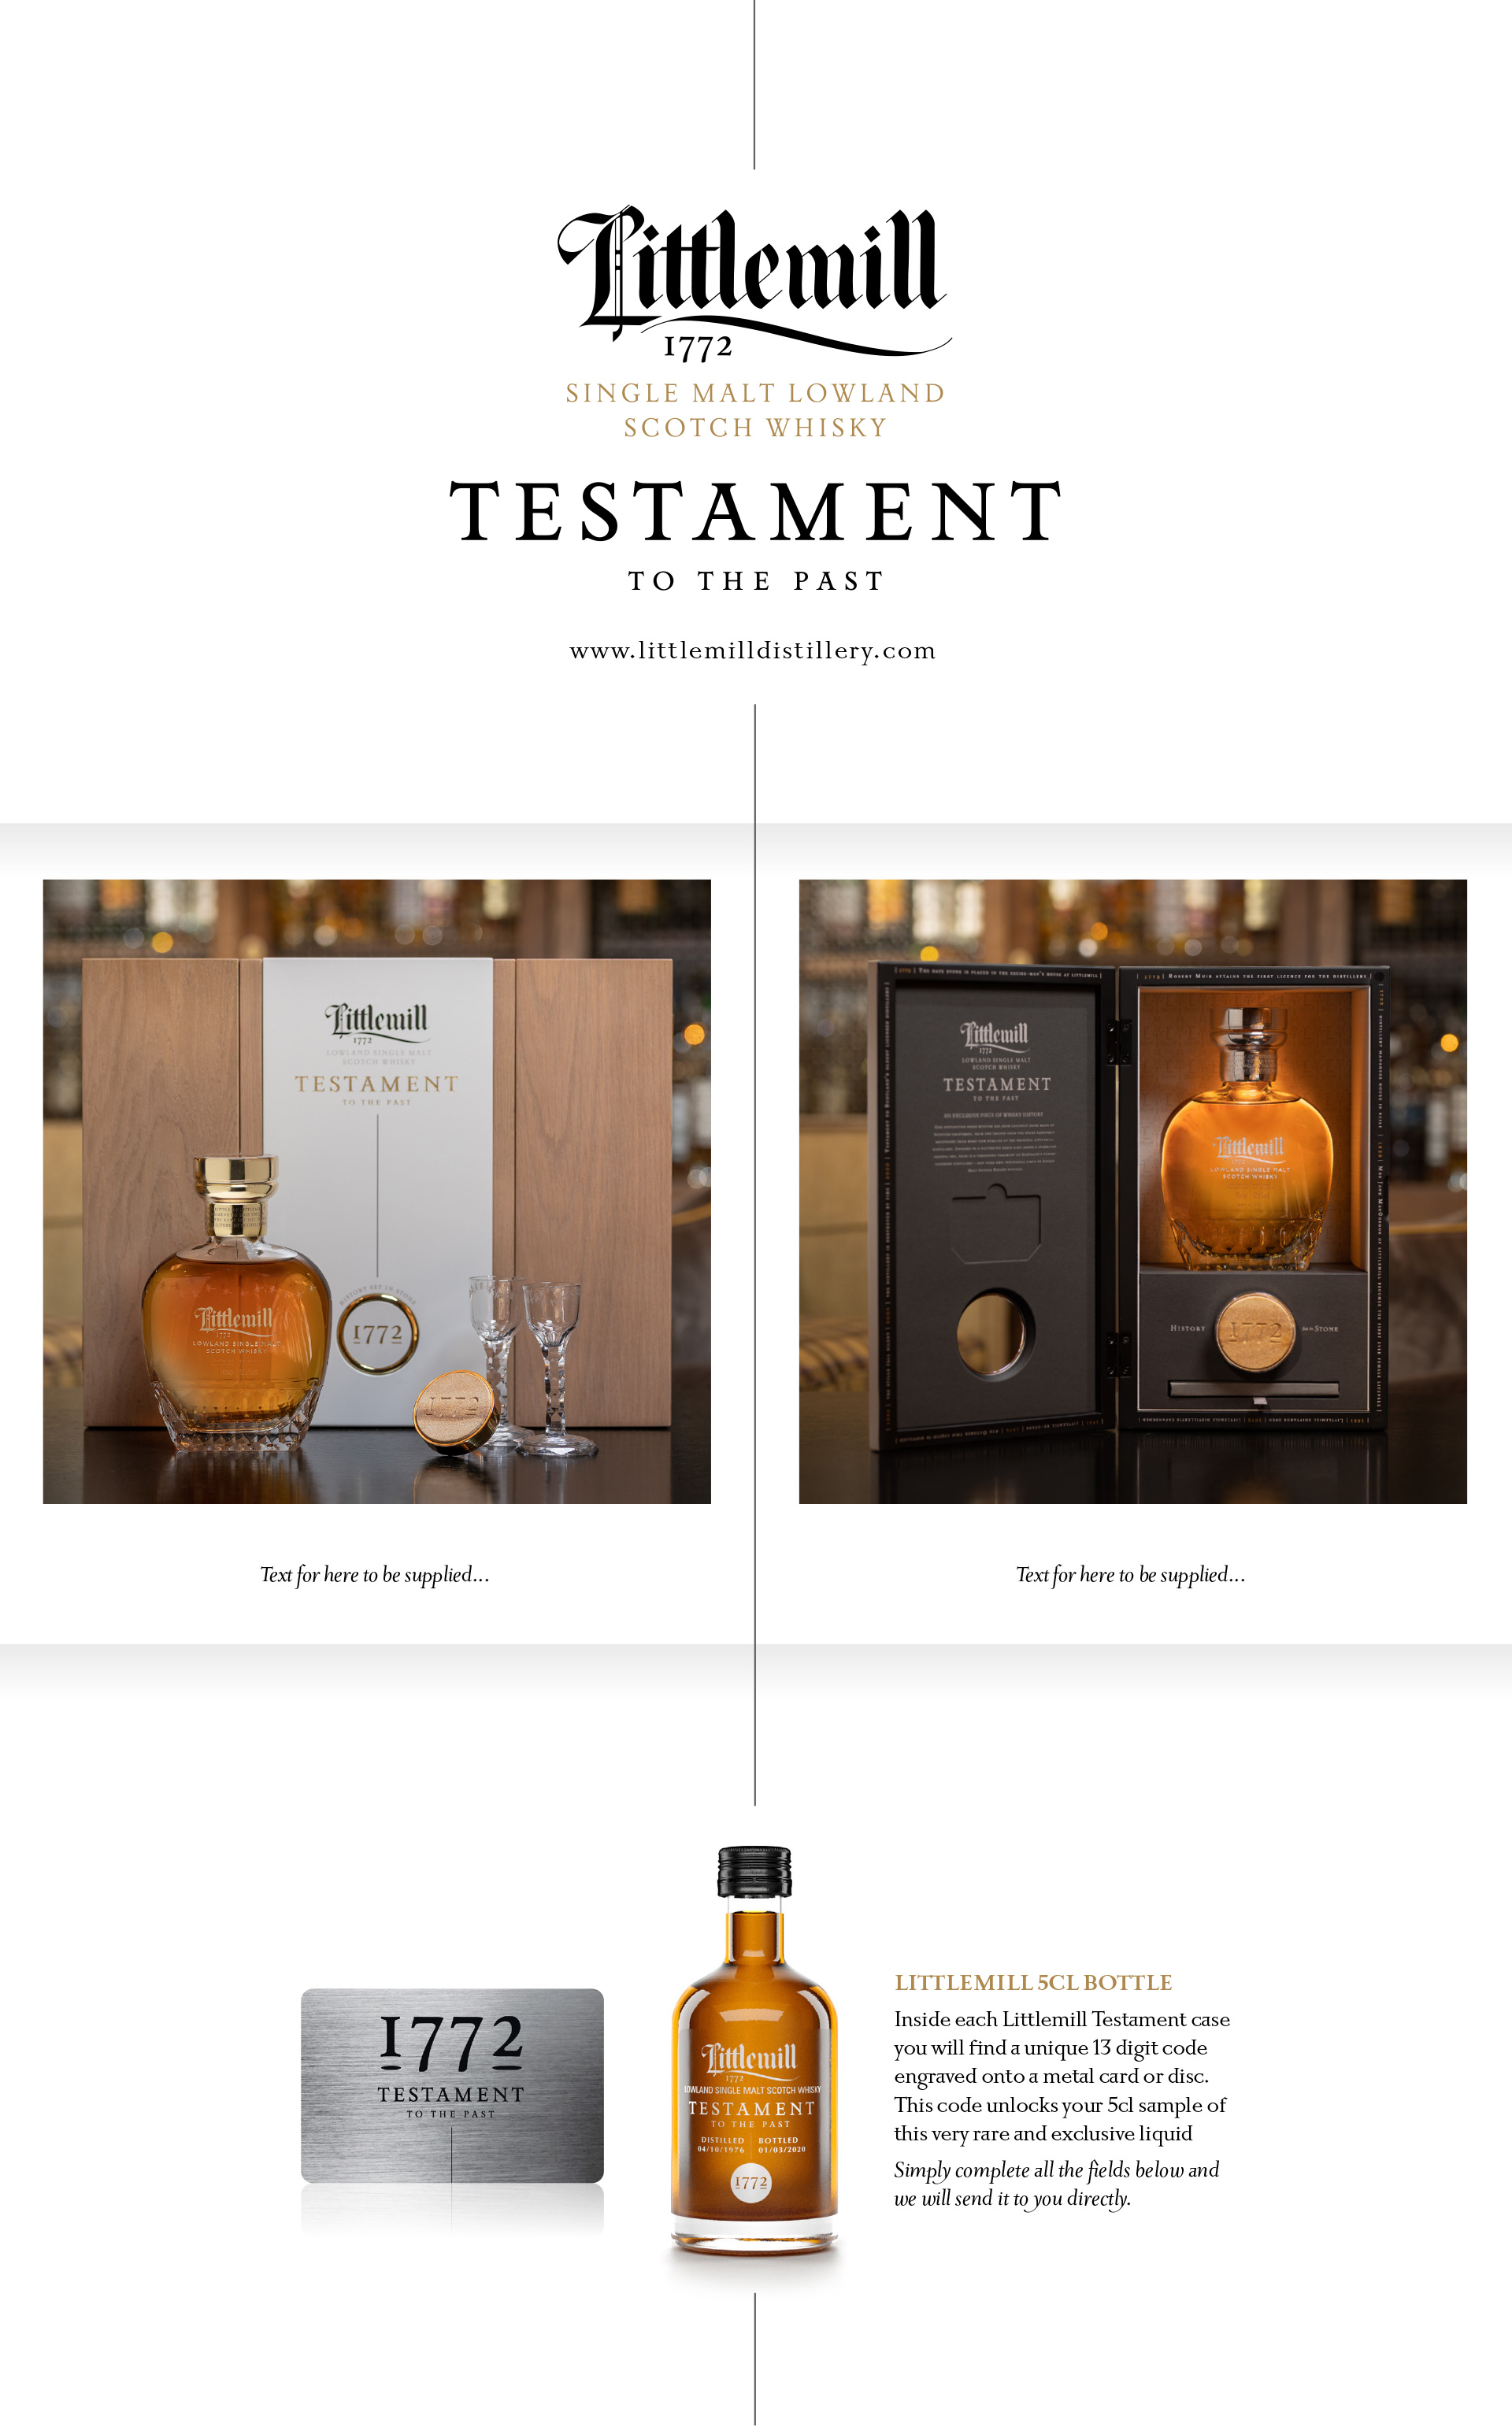 Littlemill 1772 Testament Website Design